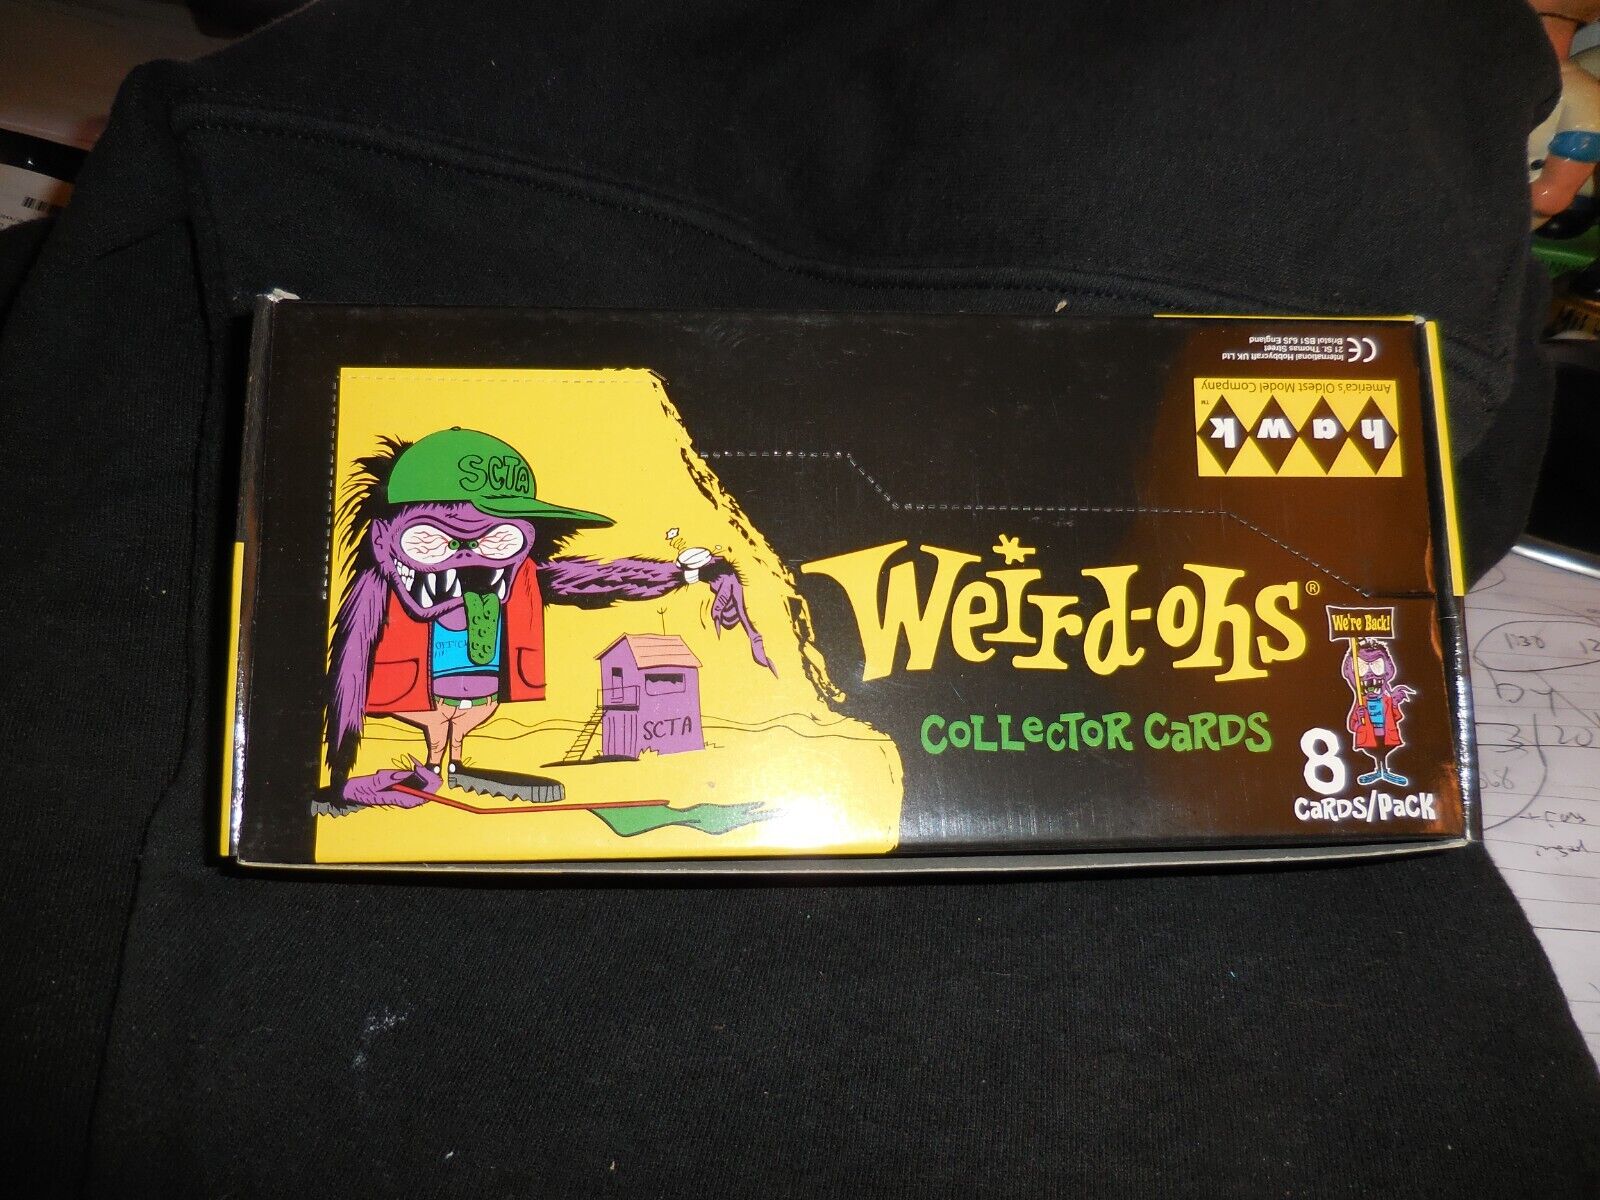 2007 Weird-ohs cards Box